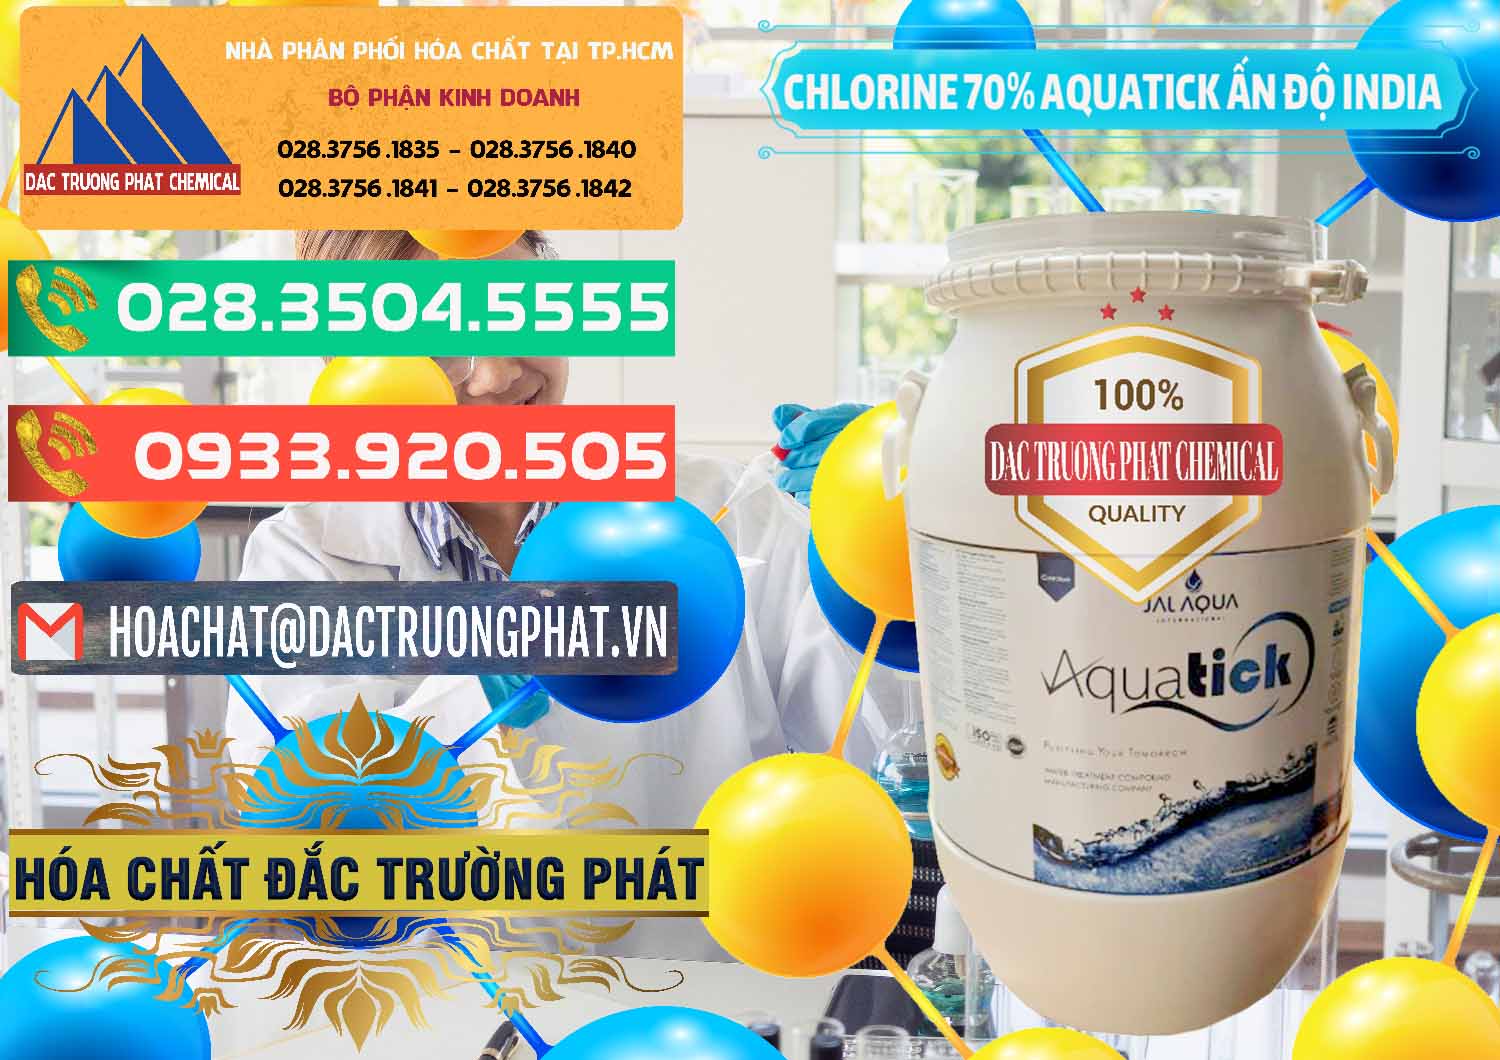 Cty chuyên bán & cung ứng Chlorine – Clorin 70% Aquatick Jal Aqua Ấn Độ India - 0215 - Cty chuyên bán và cung cấp hóa chất tại TP.HCM - congtyhoachat.com.vn